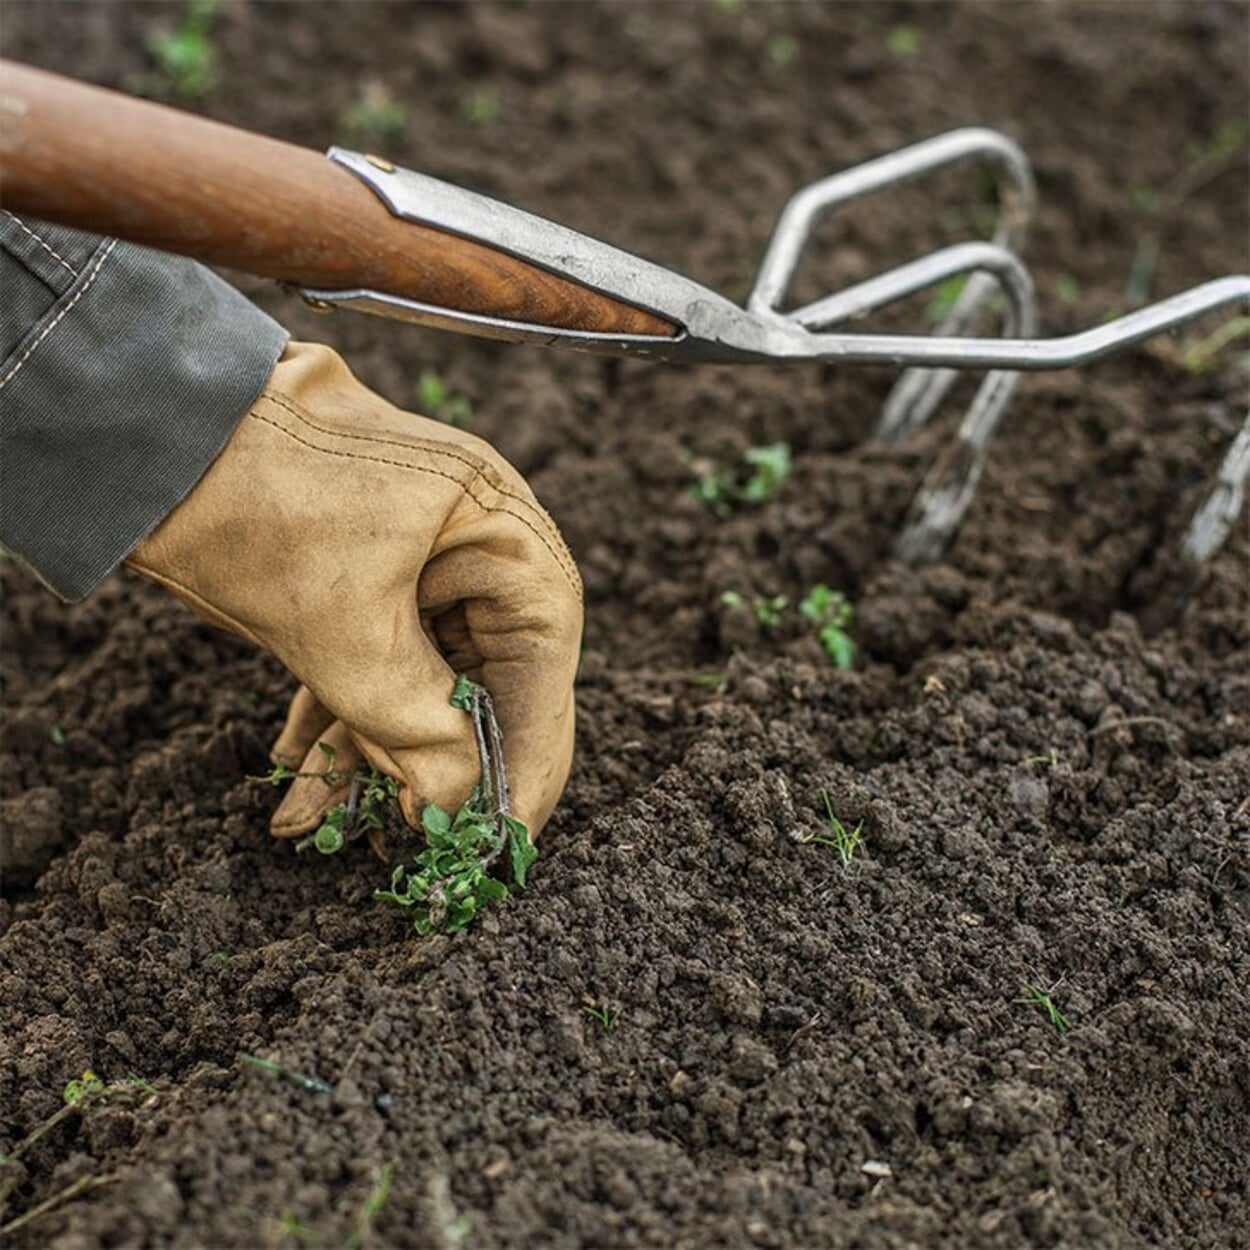 Maak voor het planten de grond goed los en verwijder onkruid